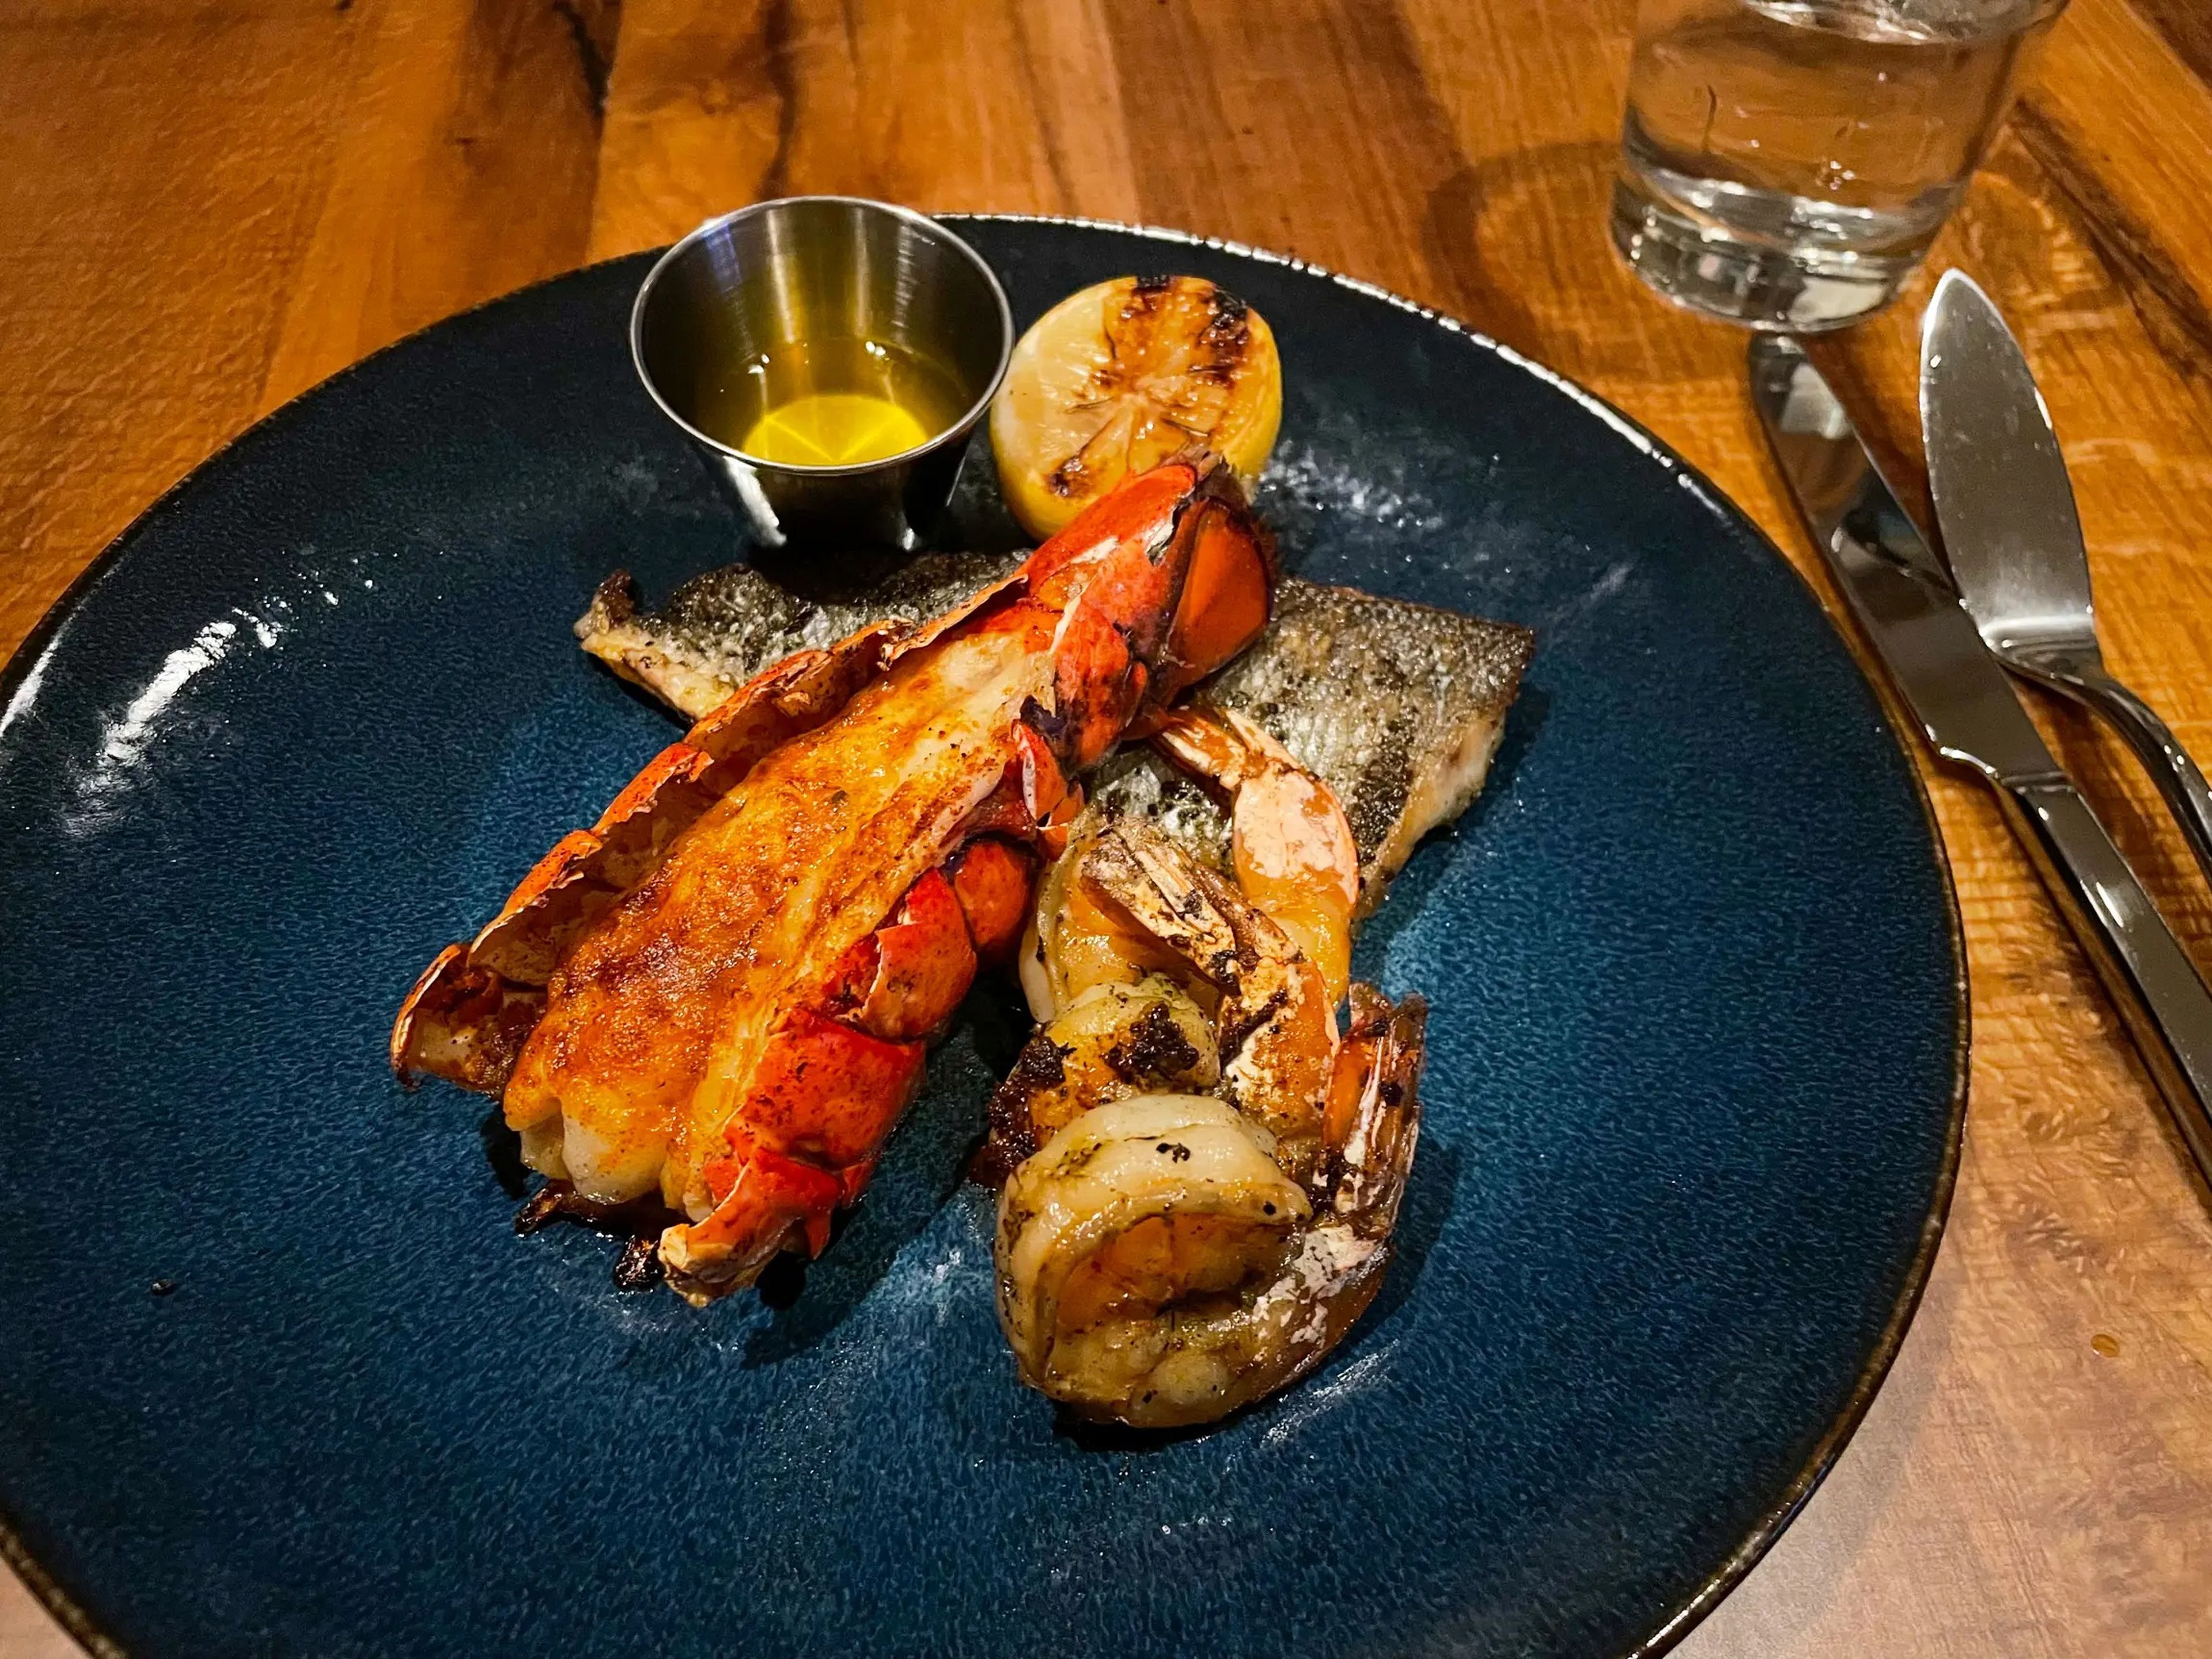 Hooked Seafood ofrece langosta, pescado y gambas a la plancha.